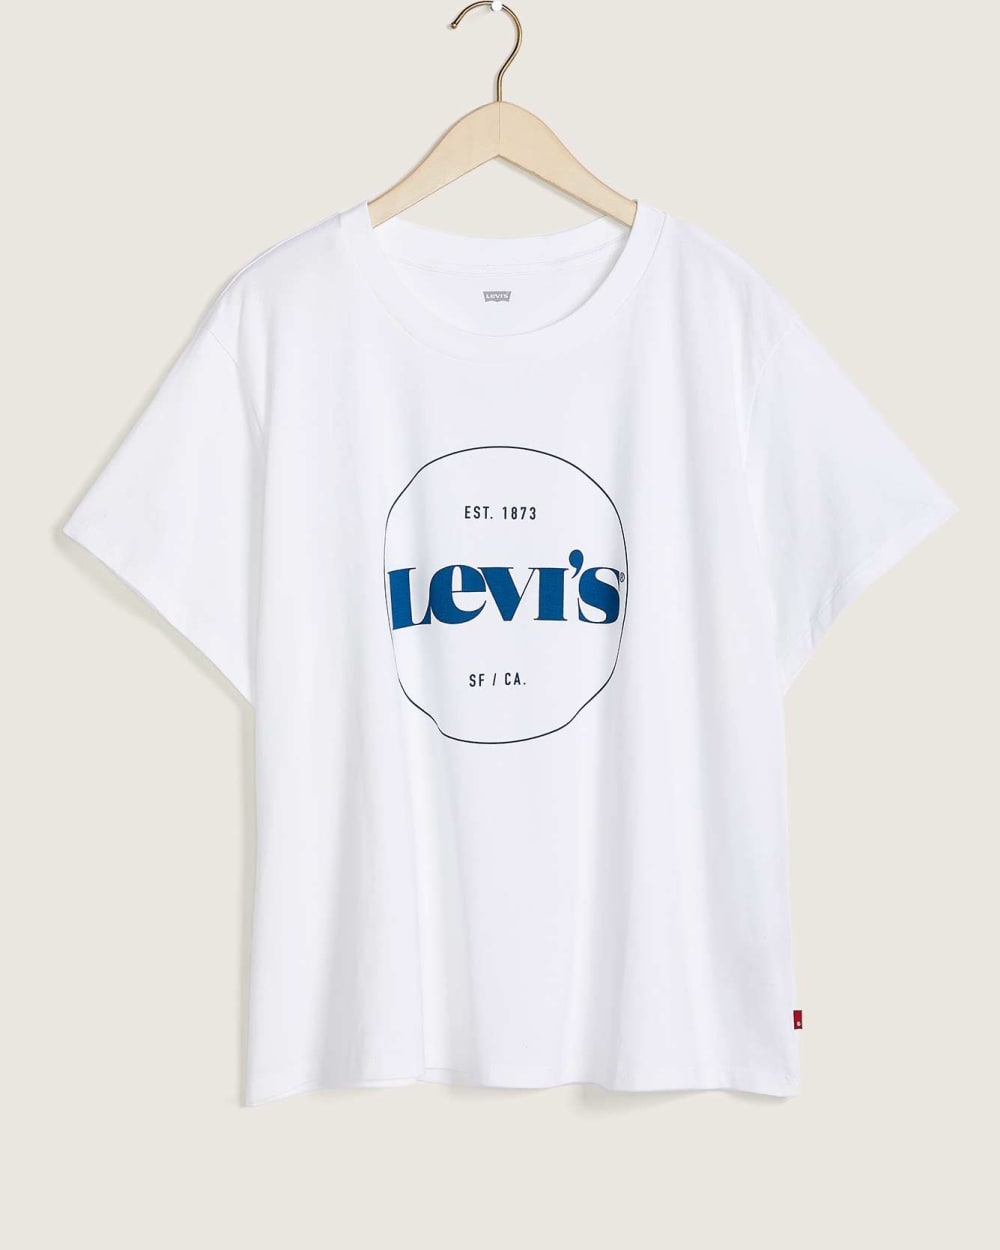 Buy > levis tshirt > in stock